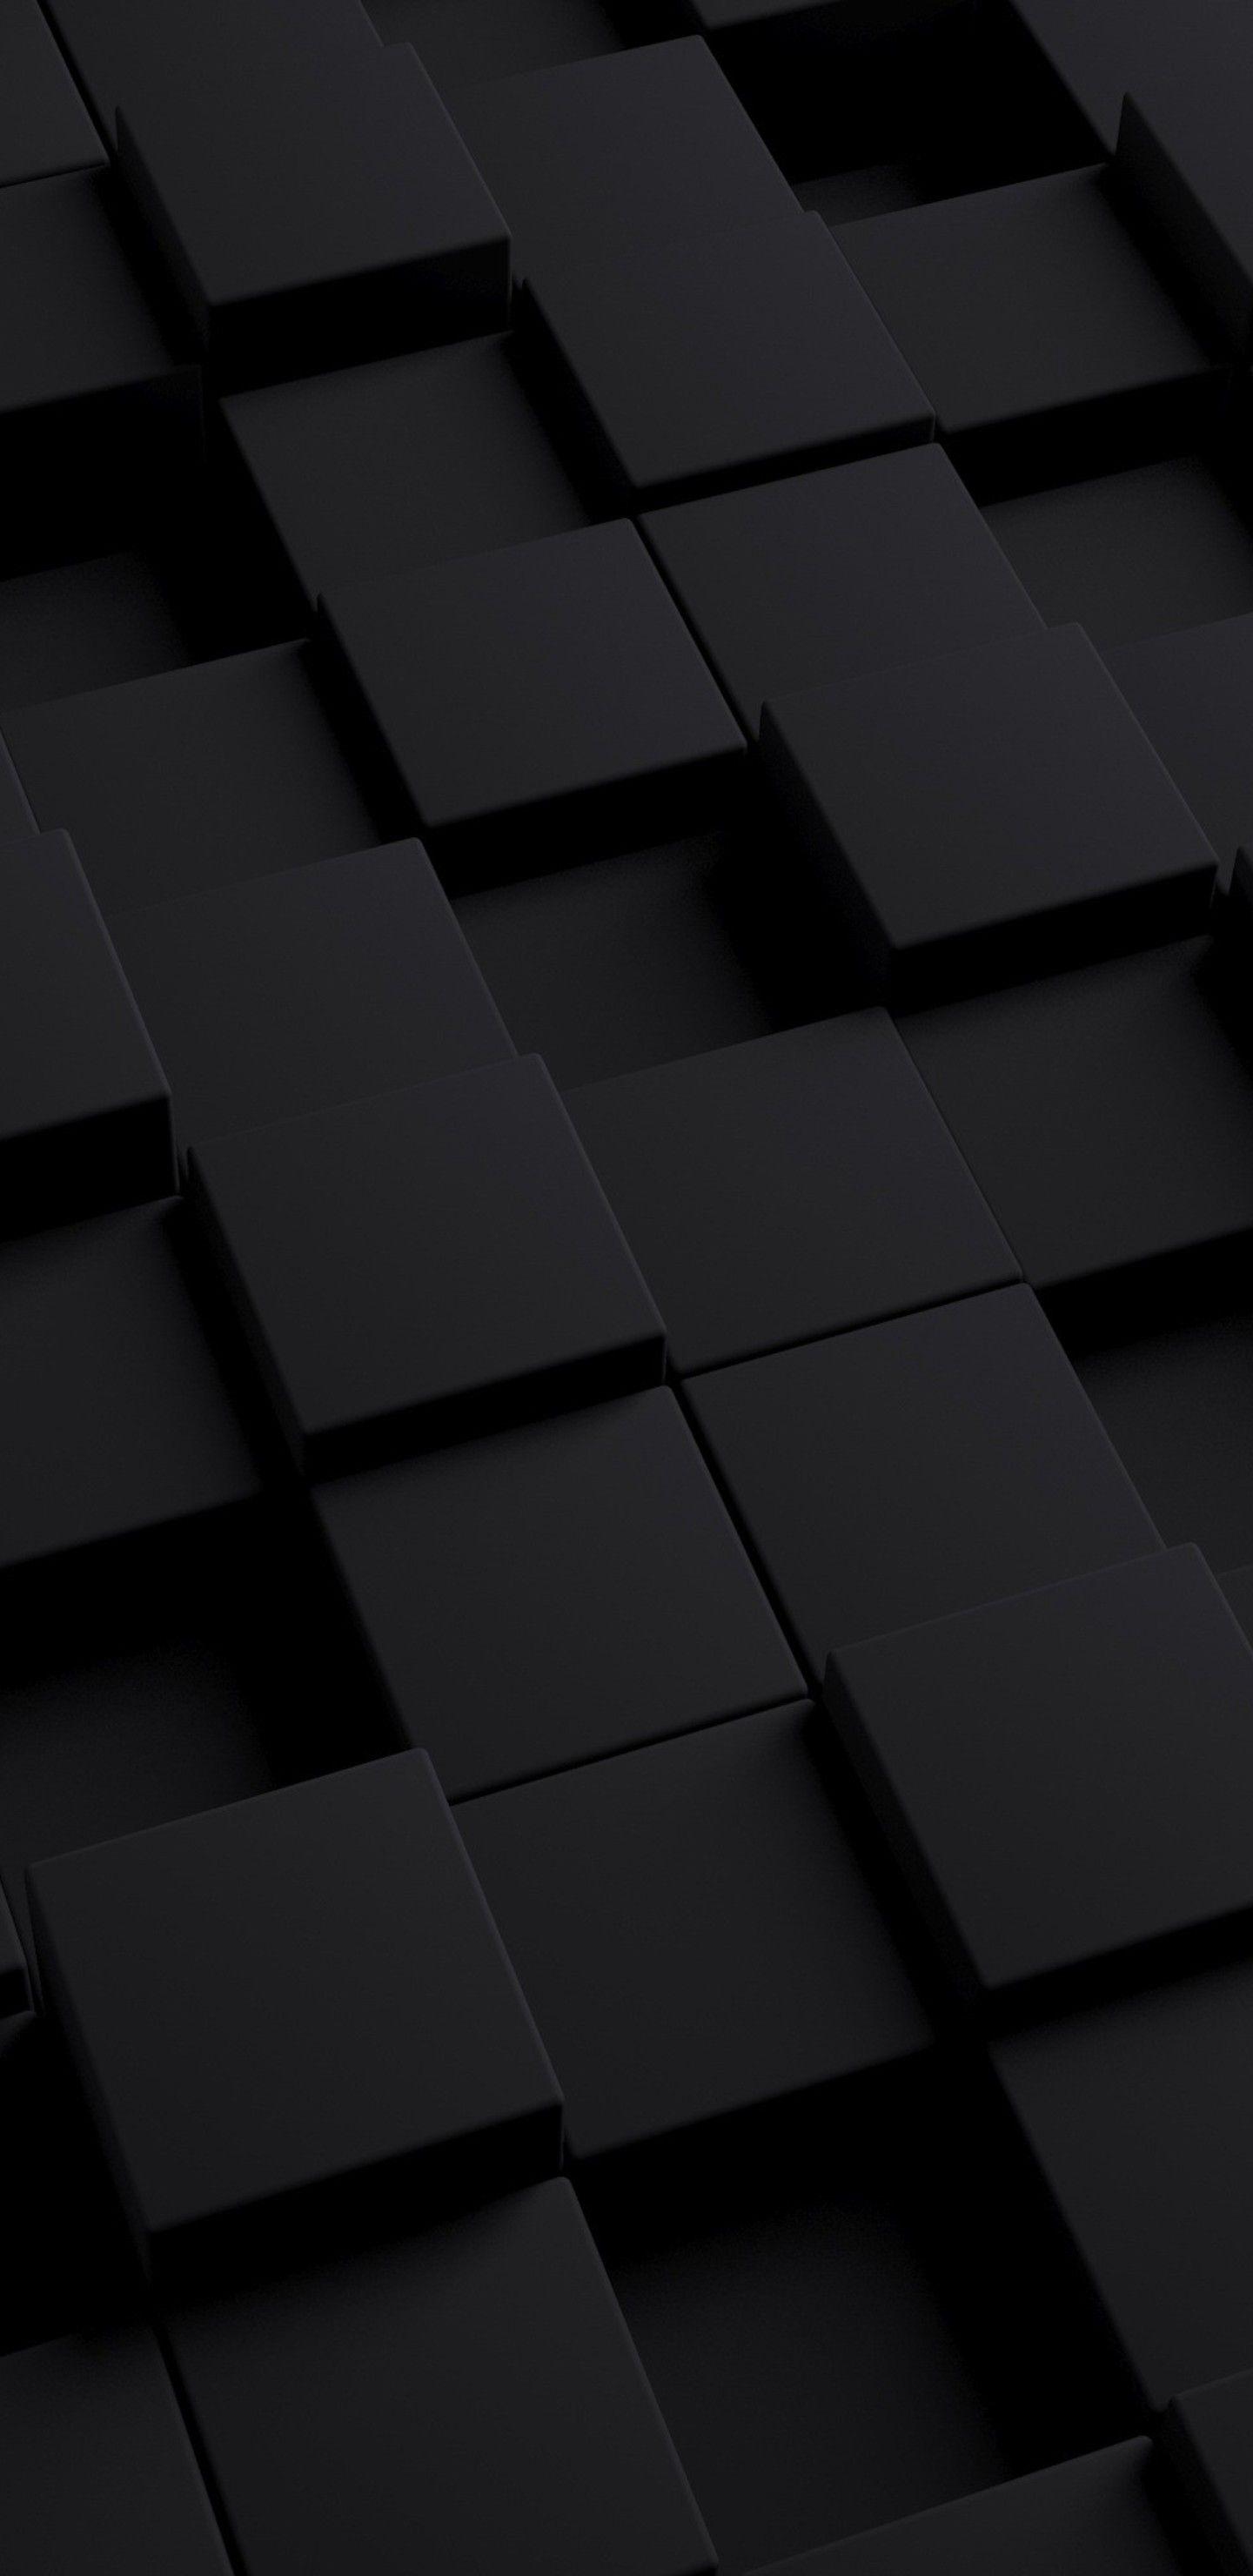 3D Black Cube Samsung Galaxy Note S S SQHD HD 4k